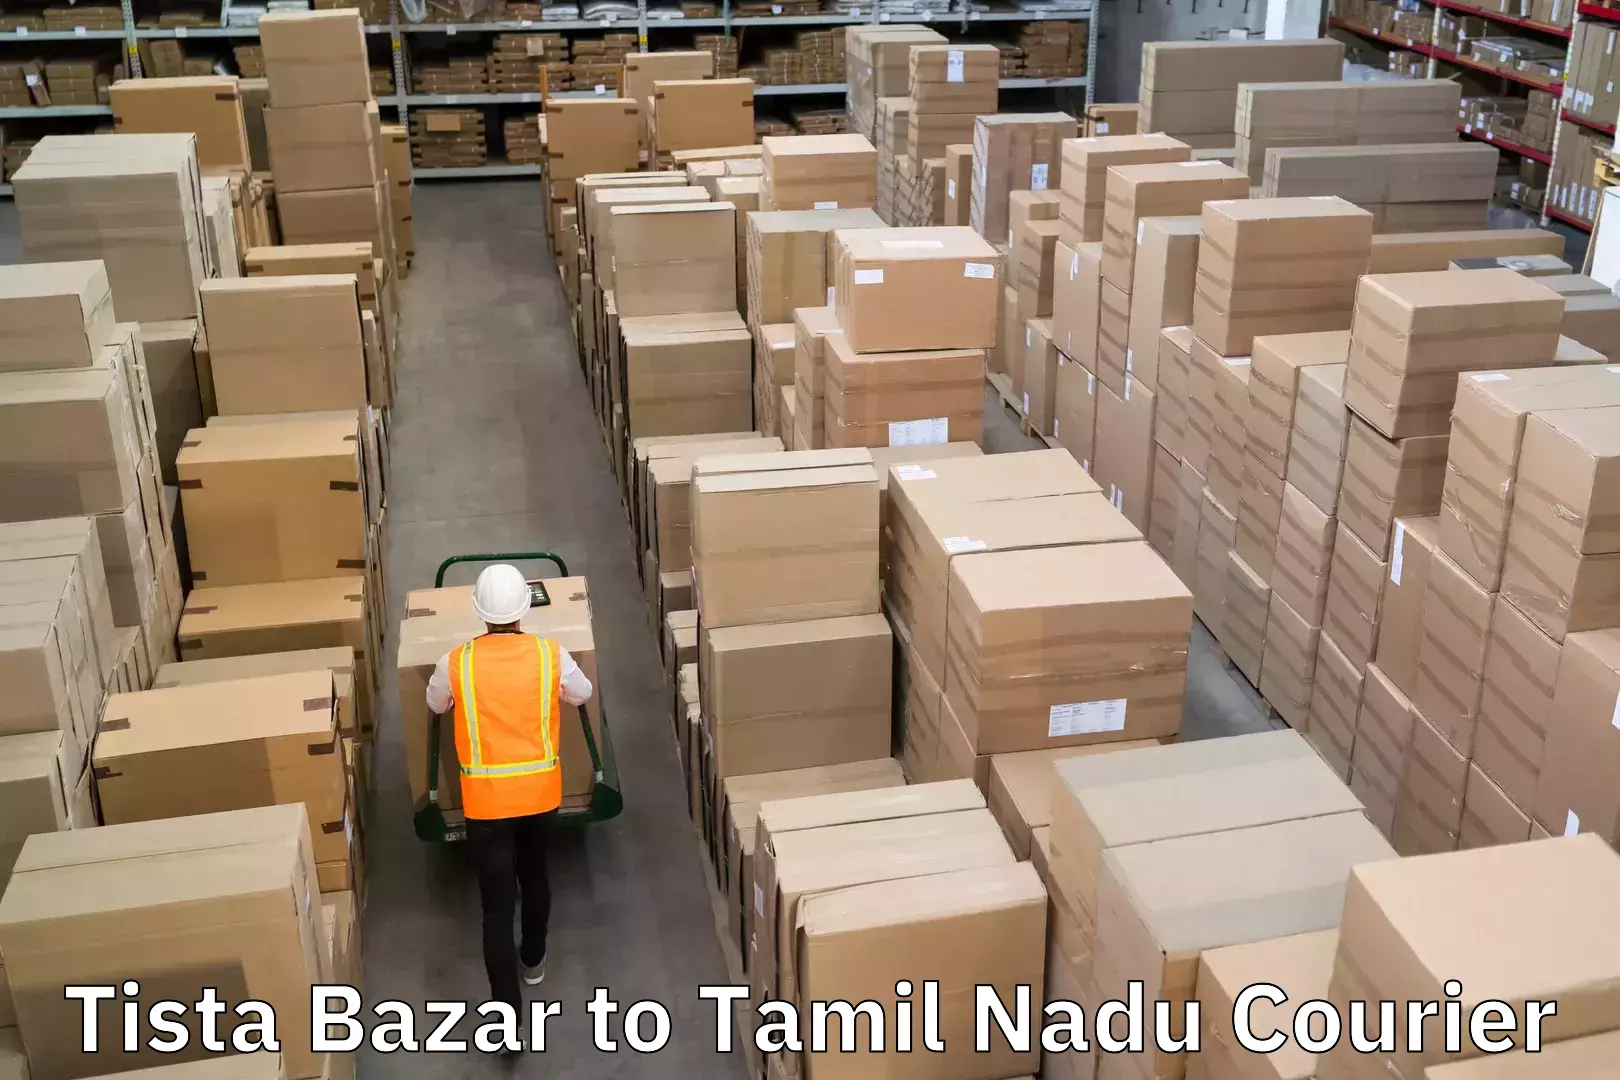 Urban courier service Tista Bazar to Tamil Nadu